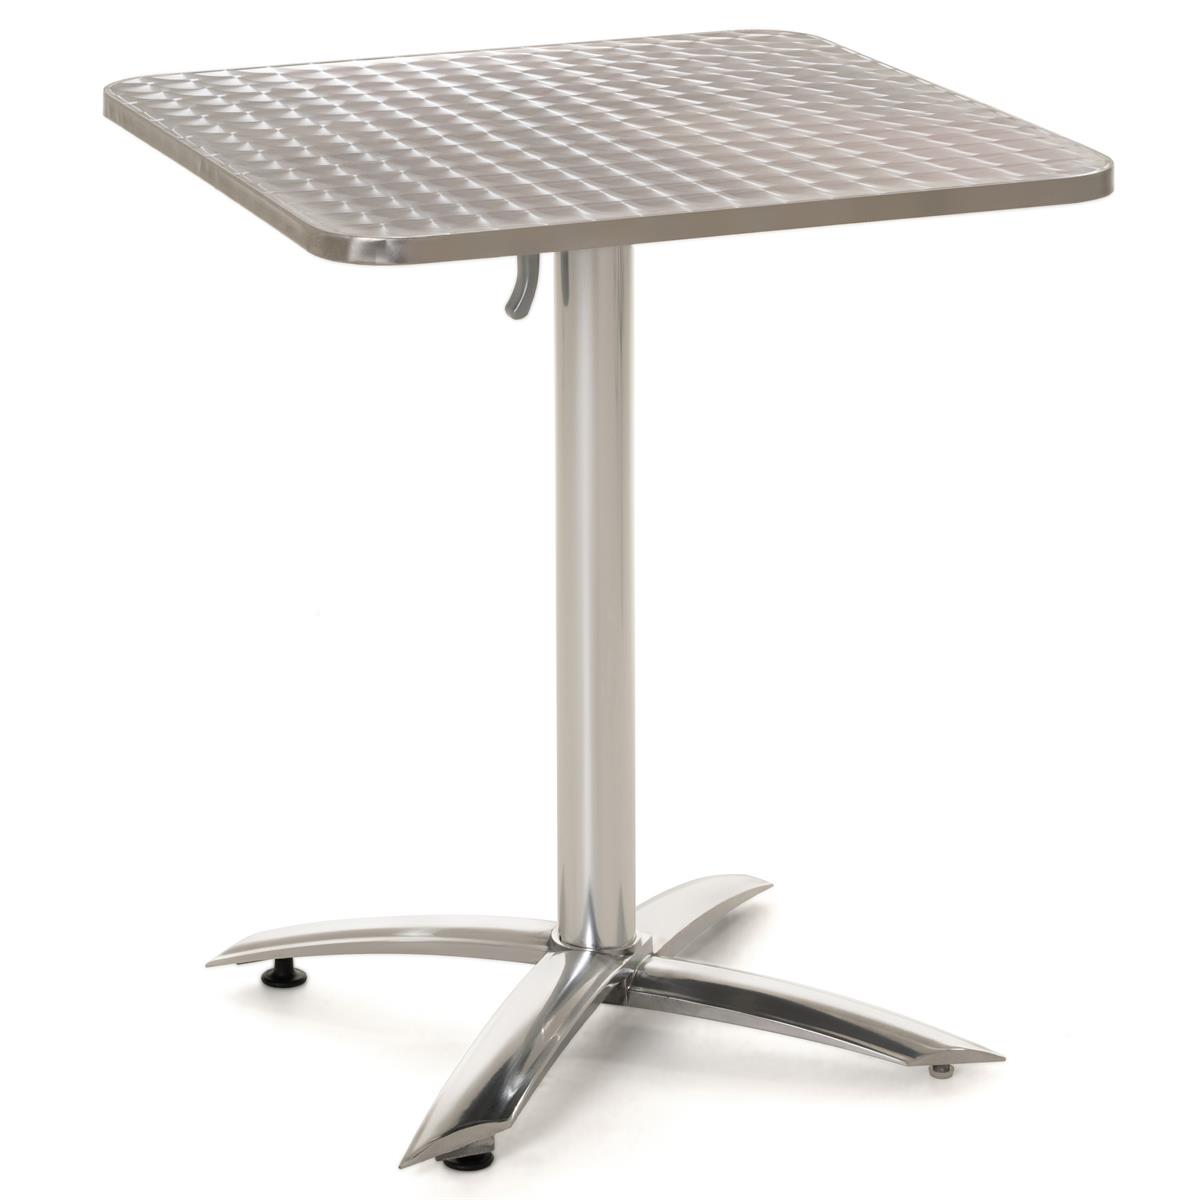 Aluminium klappbar Gartentisch 60x60cm quadratisch Bistro-Tisch